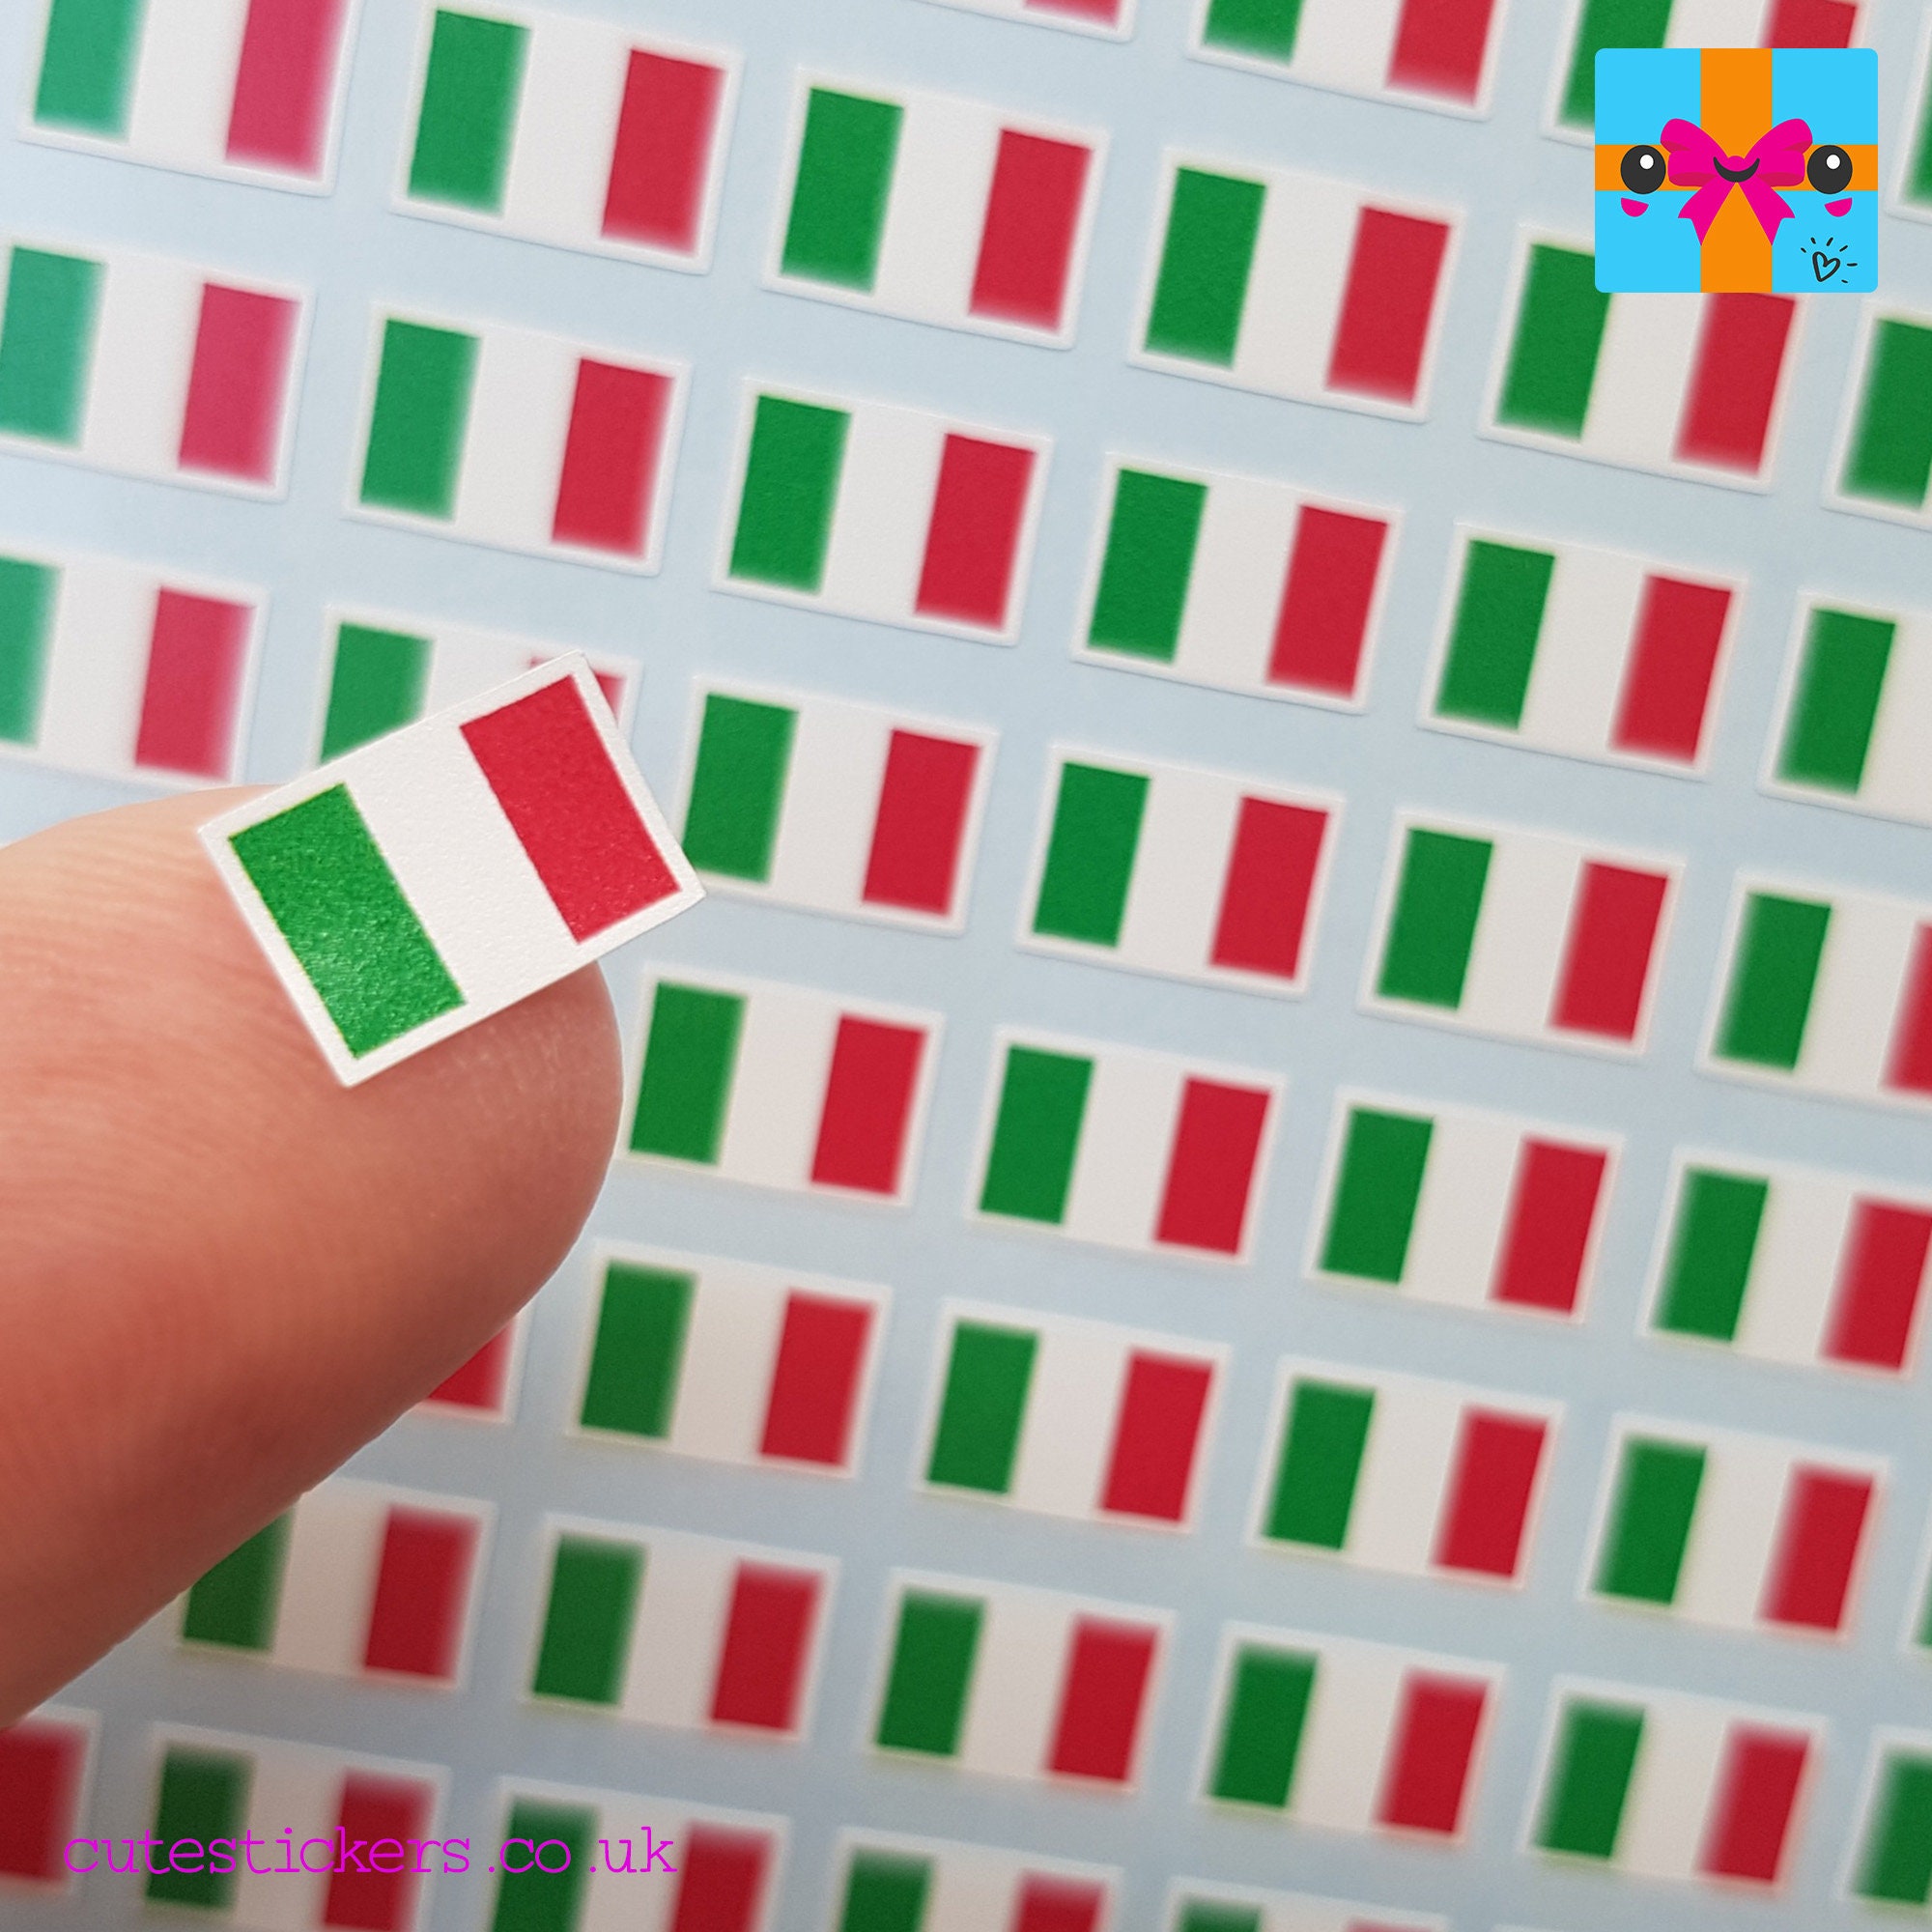 Möchten Sie Nummernschild-Aufkleber mit Flagge von Italien kaufen? -  Stickermaster